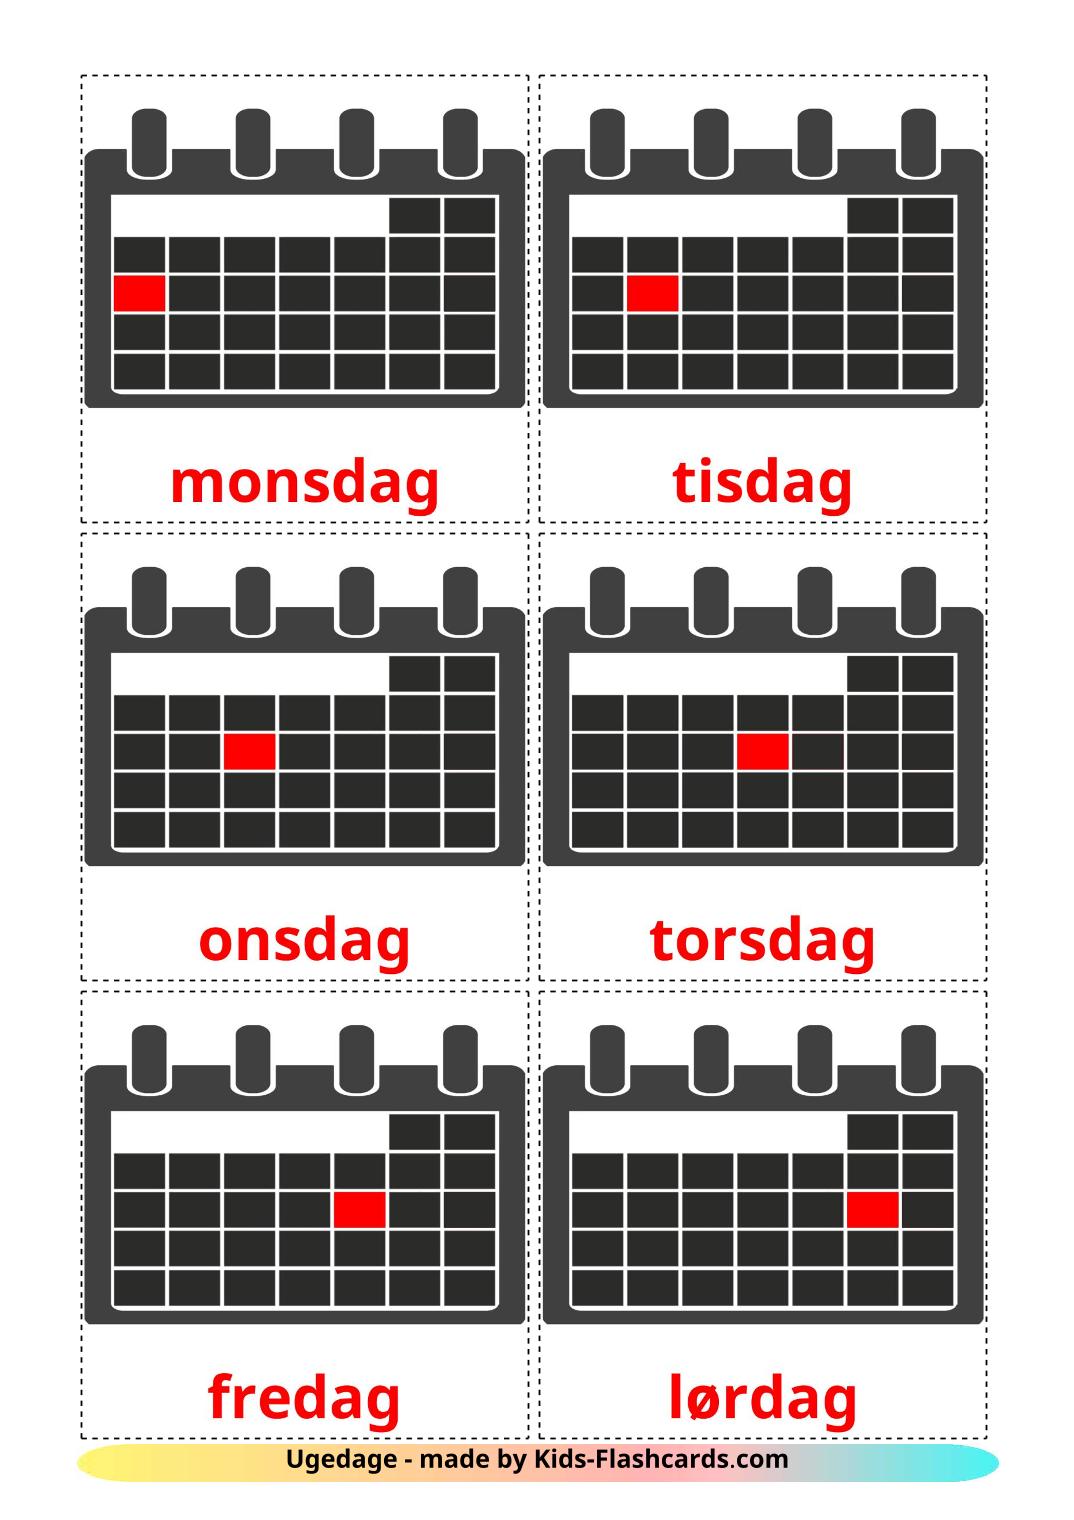 Días de la semana - 12 fichas de dansk para imprimir gratis 